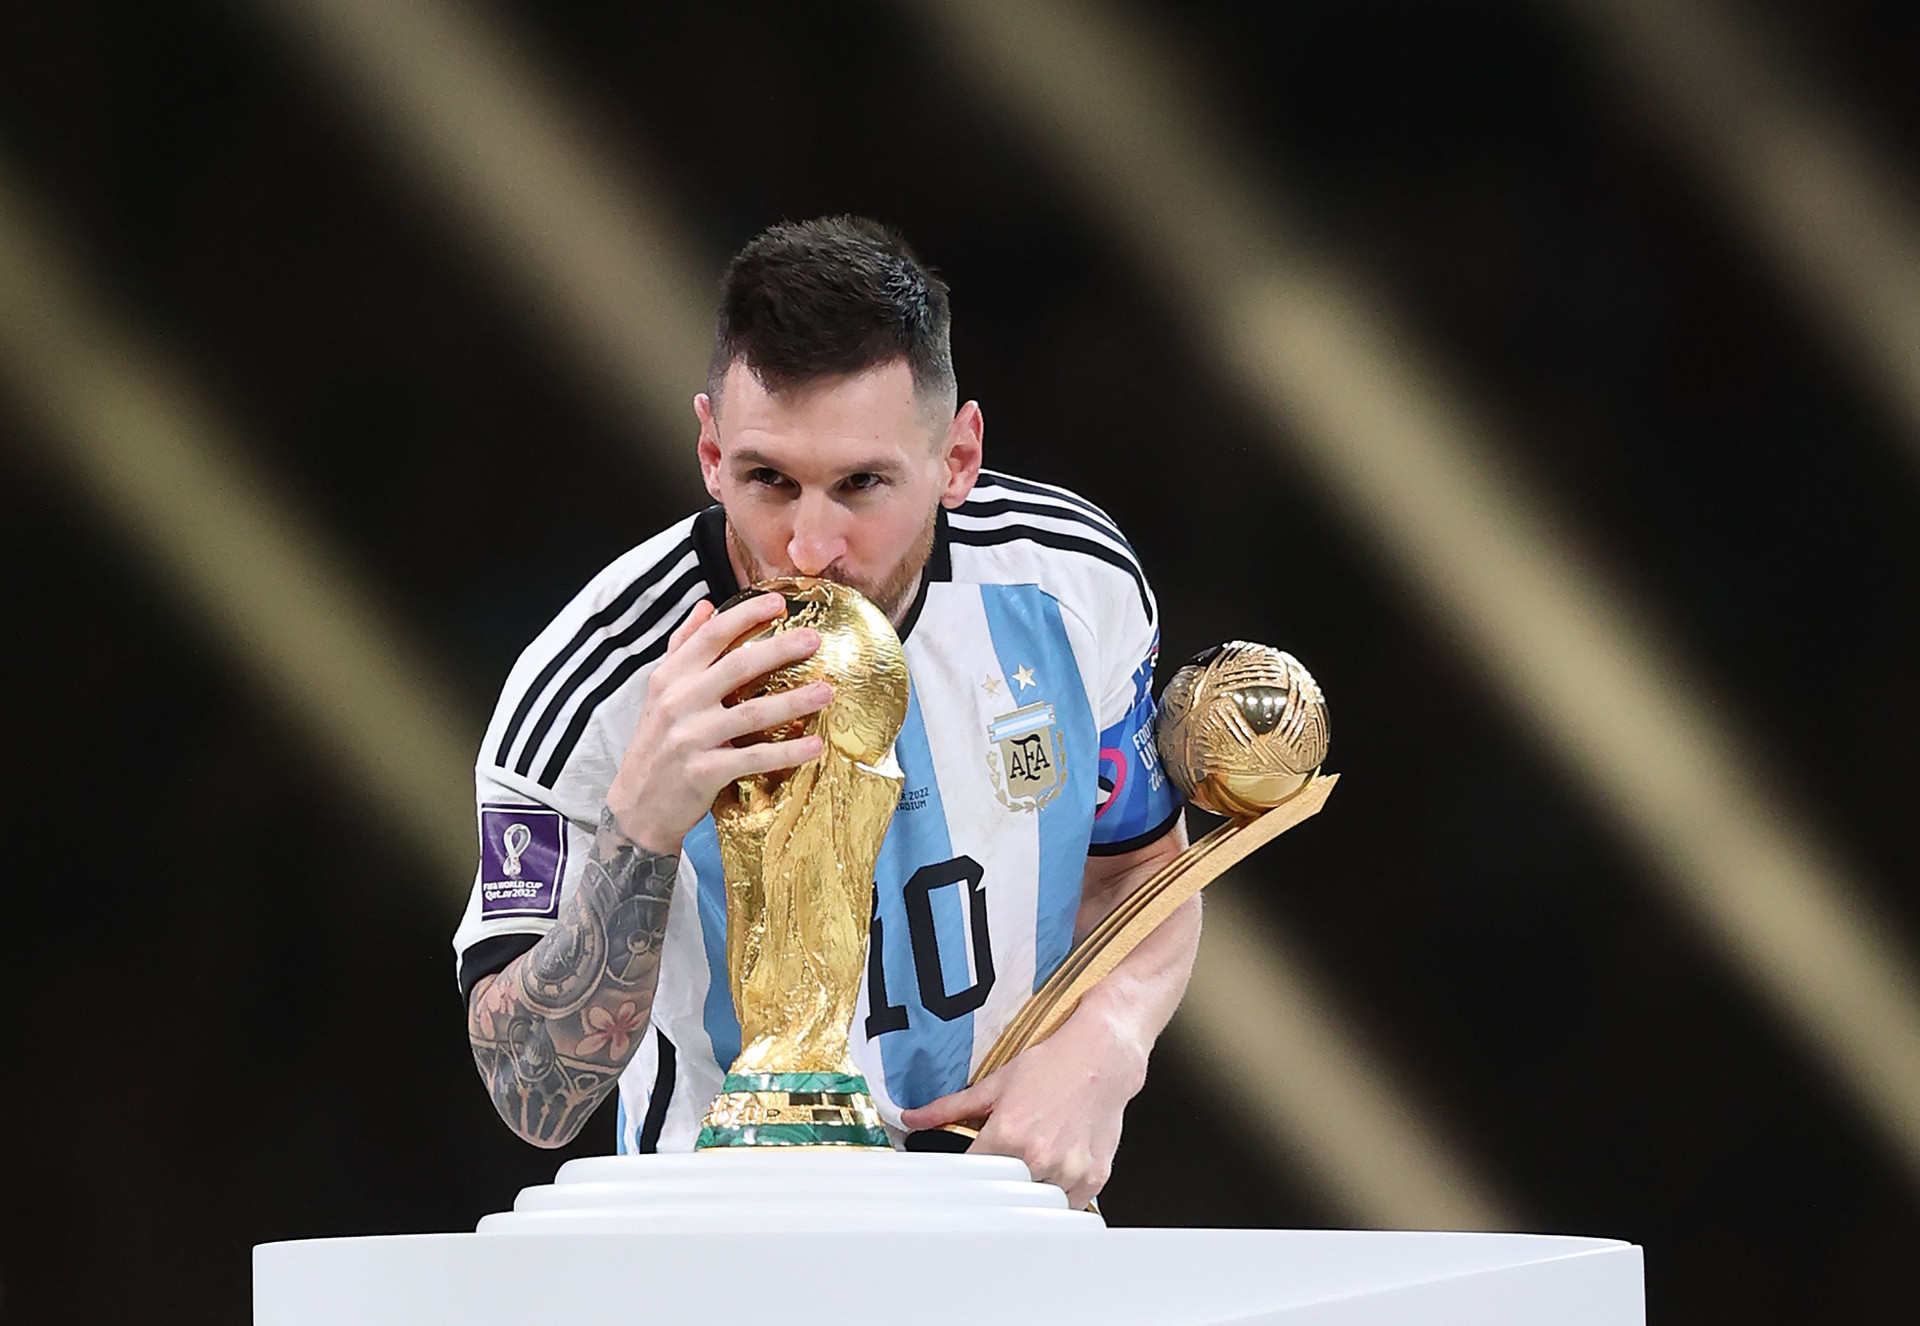 Sự thật thú vị về Cúp vàng World Cup: chiếc cúp Messi nhận được chỉ là bản sao và FIFA sắp thay cúp mới vì... không còn đủ chỗ khắc tên cho nhà vô địch - Ảnh 1.